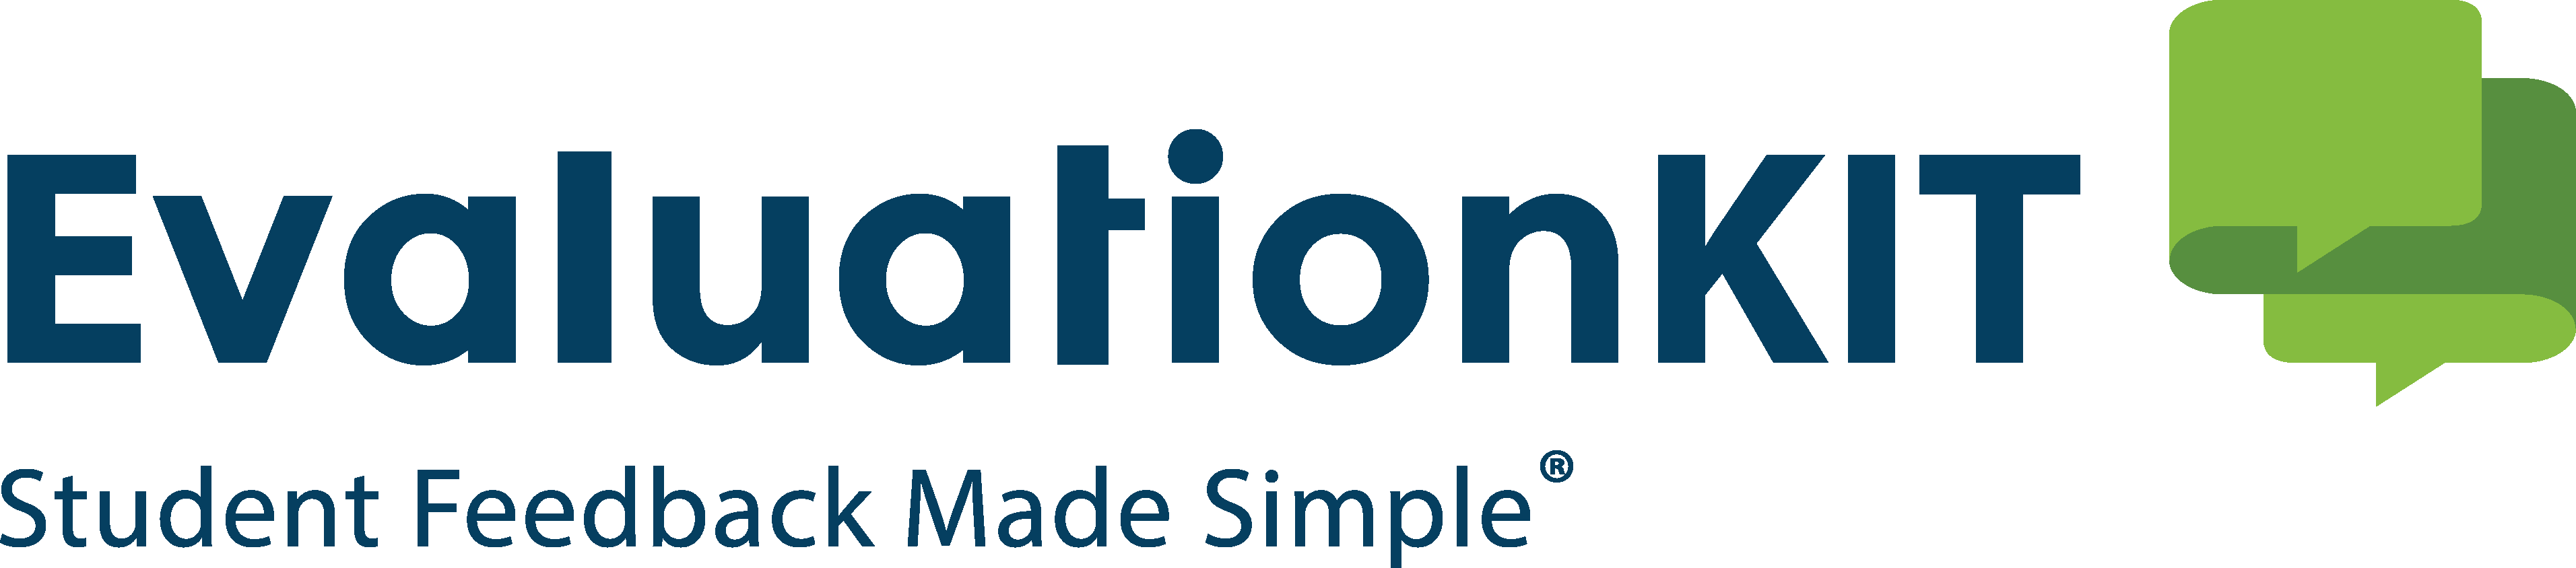 EvaluationKit logo